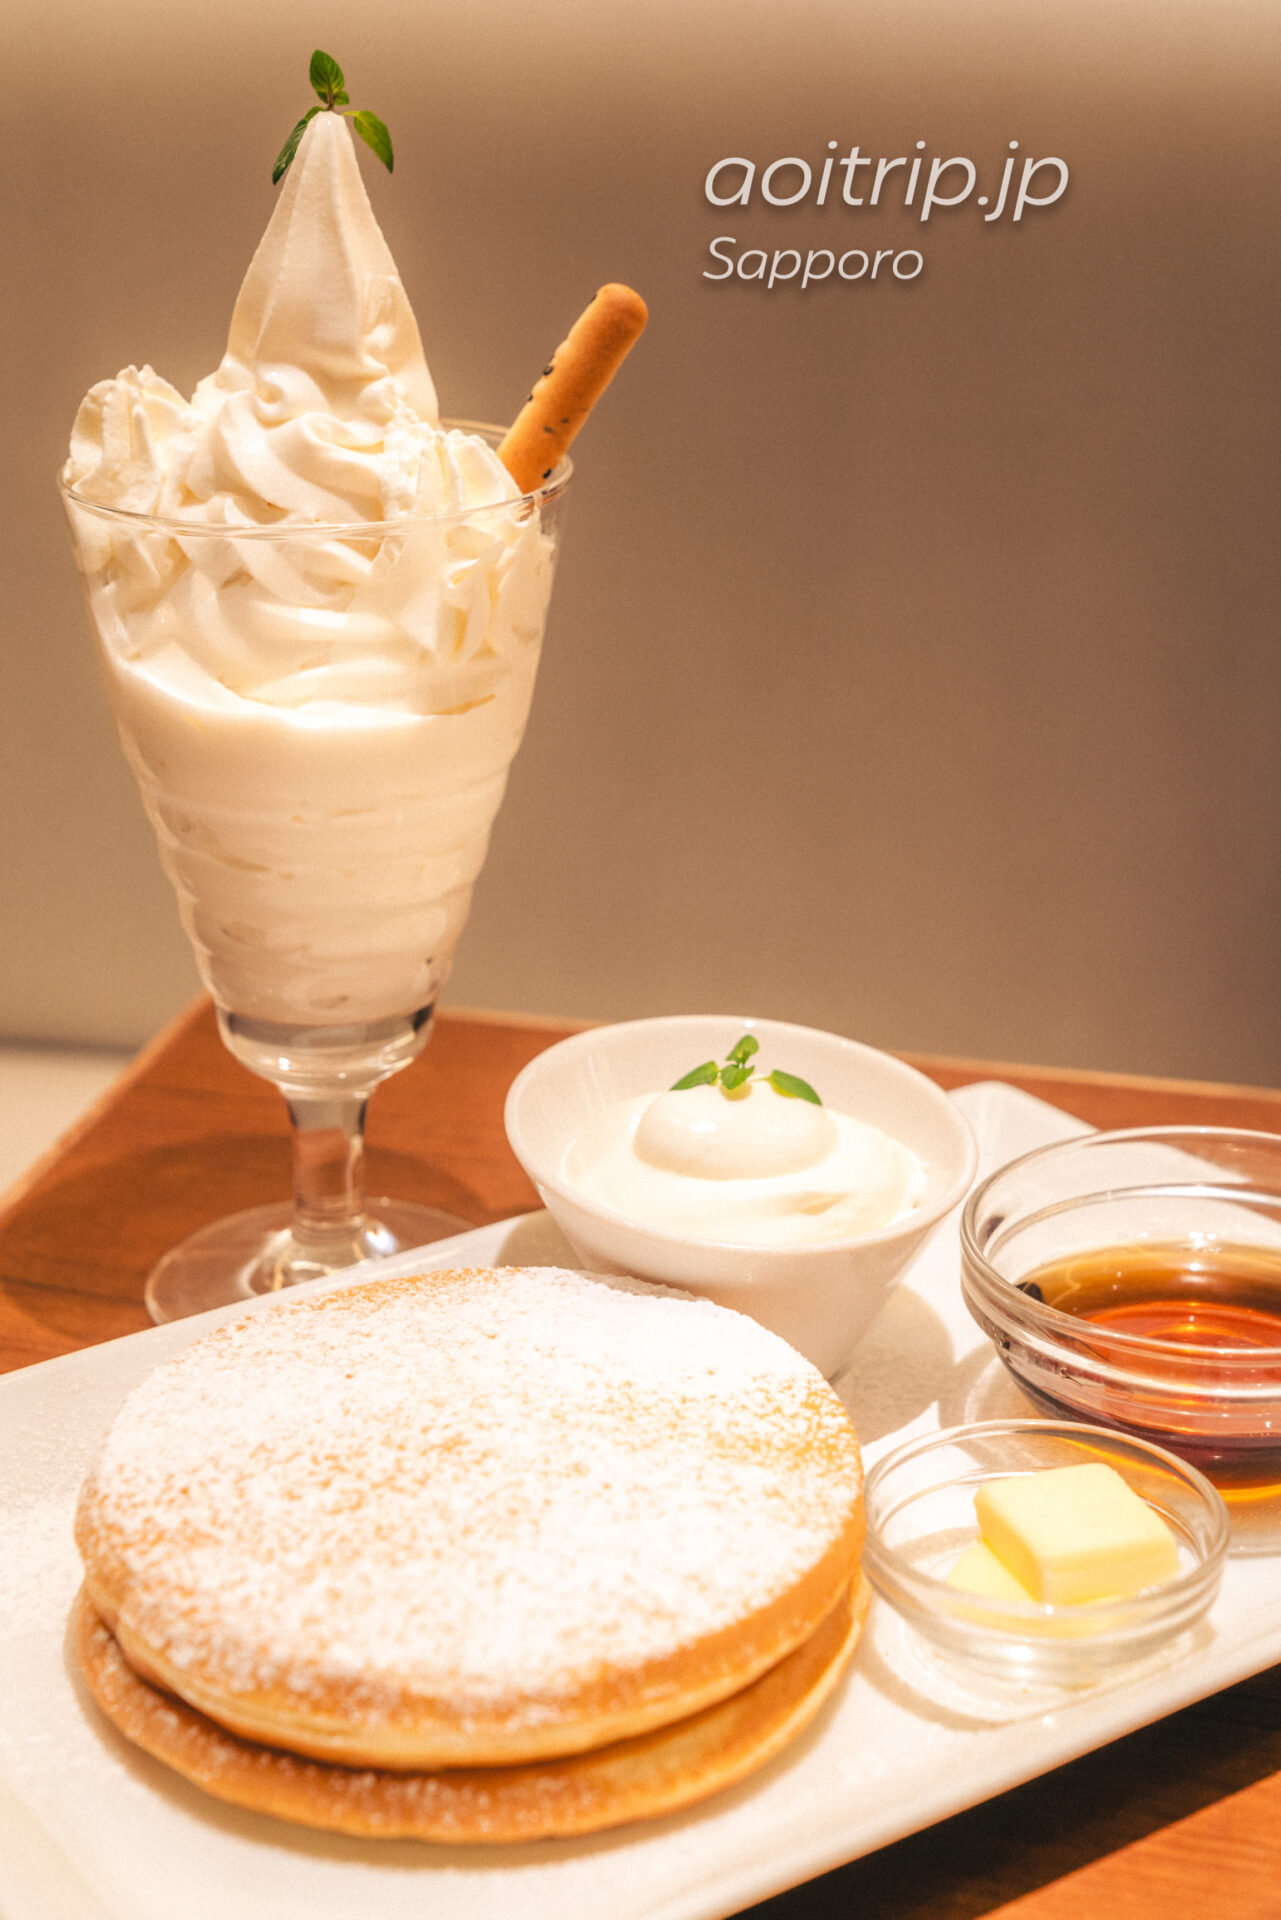 札幌 よつ葉ホワイトコージ よつ葉の白いパフェ よつ葉バターとメイプルのパンケーキ